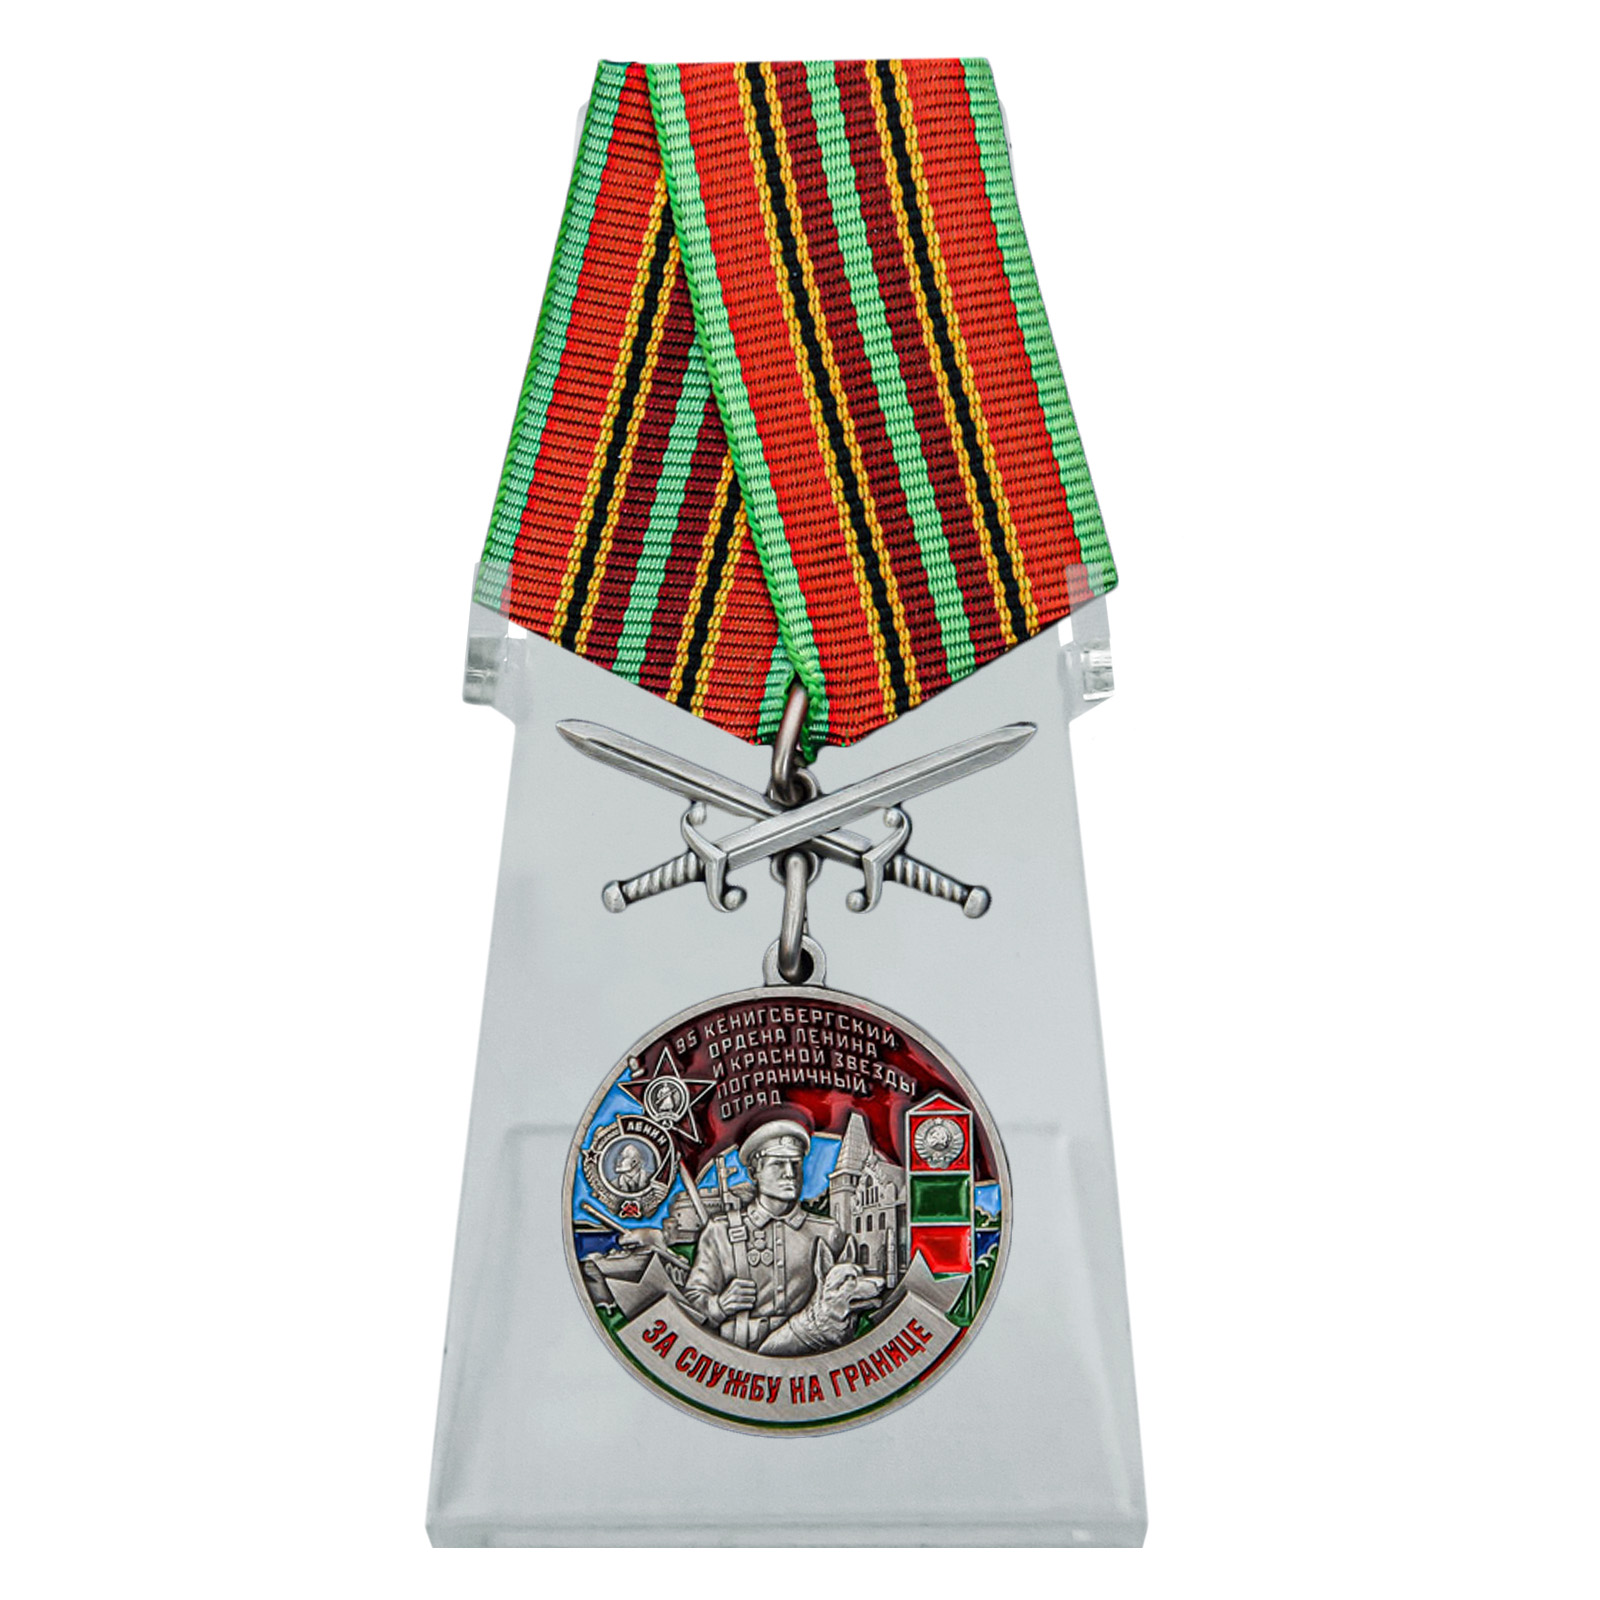 Медаль "95 Кёнигсбергский пограничный отряд" на подставке